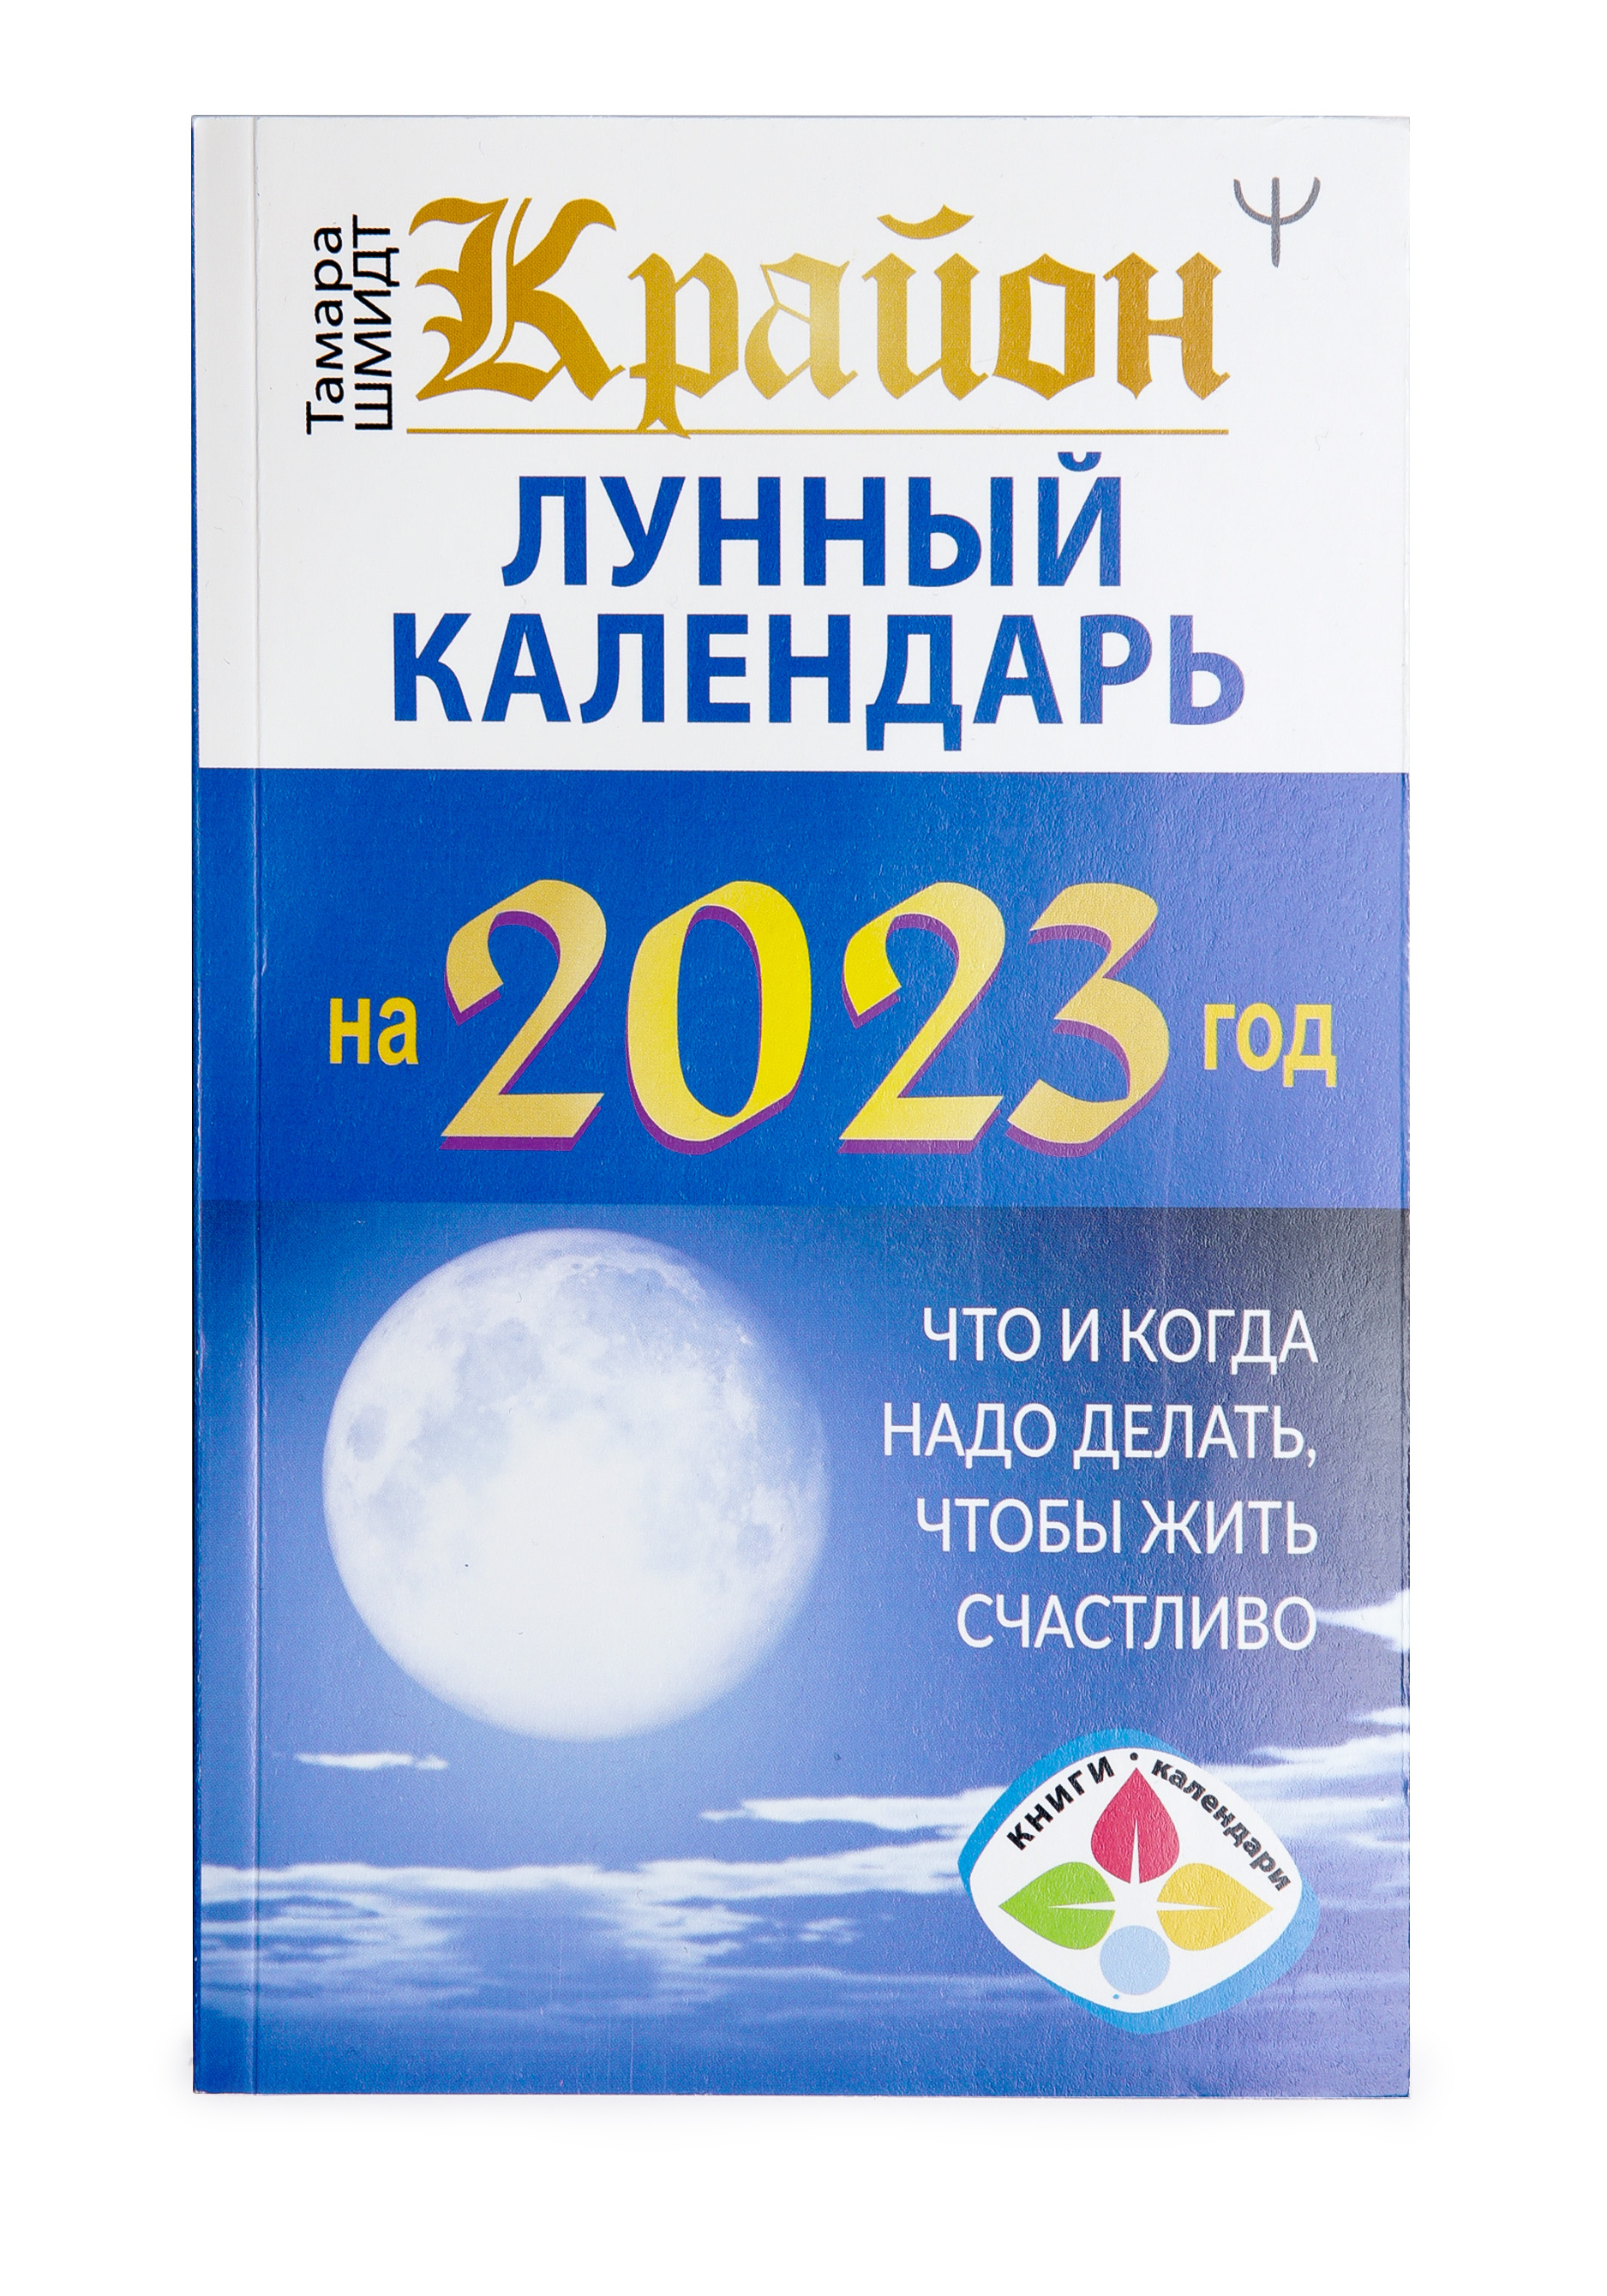 Печатный календарь на 2023 год, цвет синий - фото 10